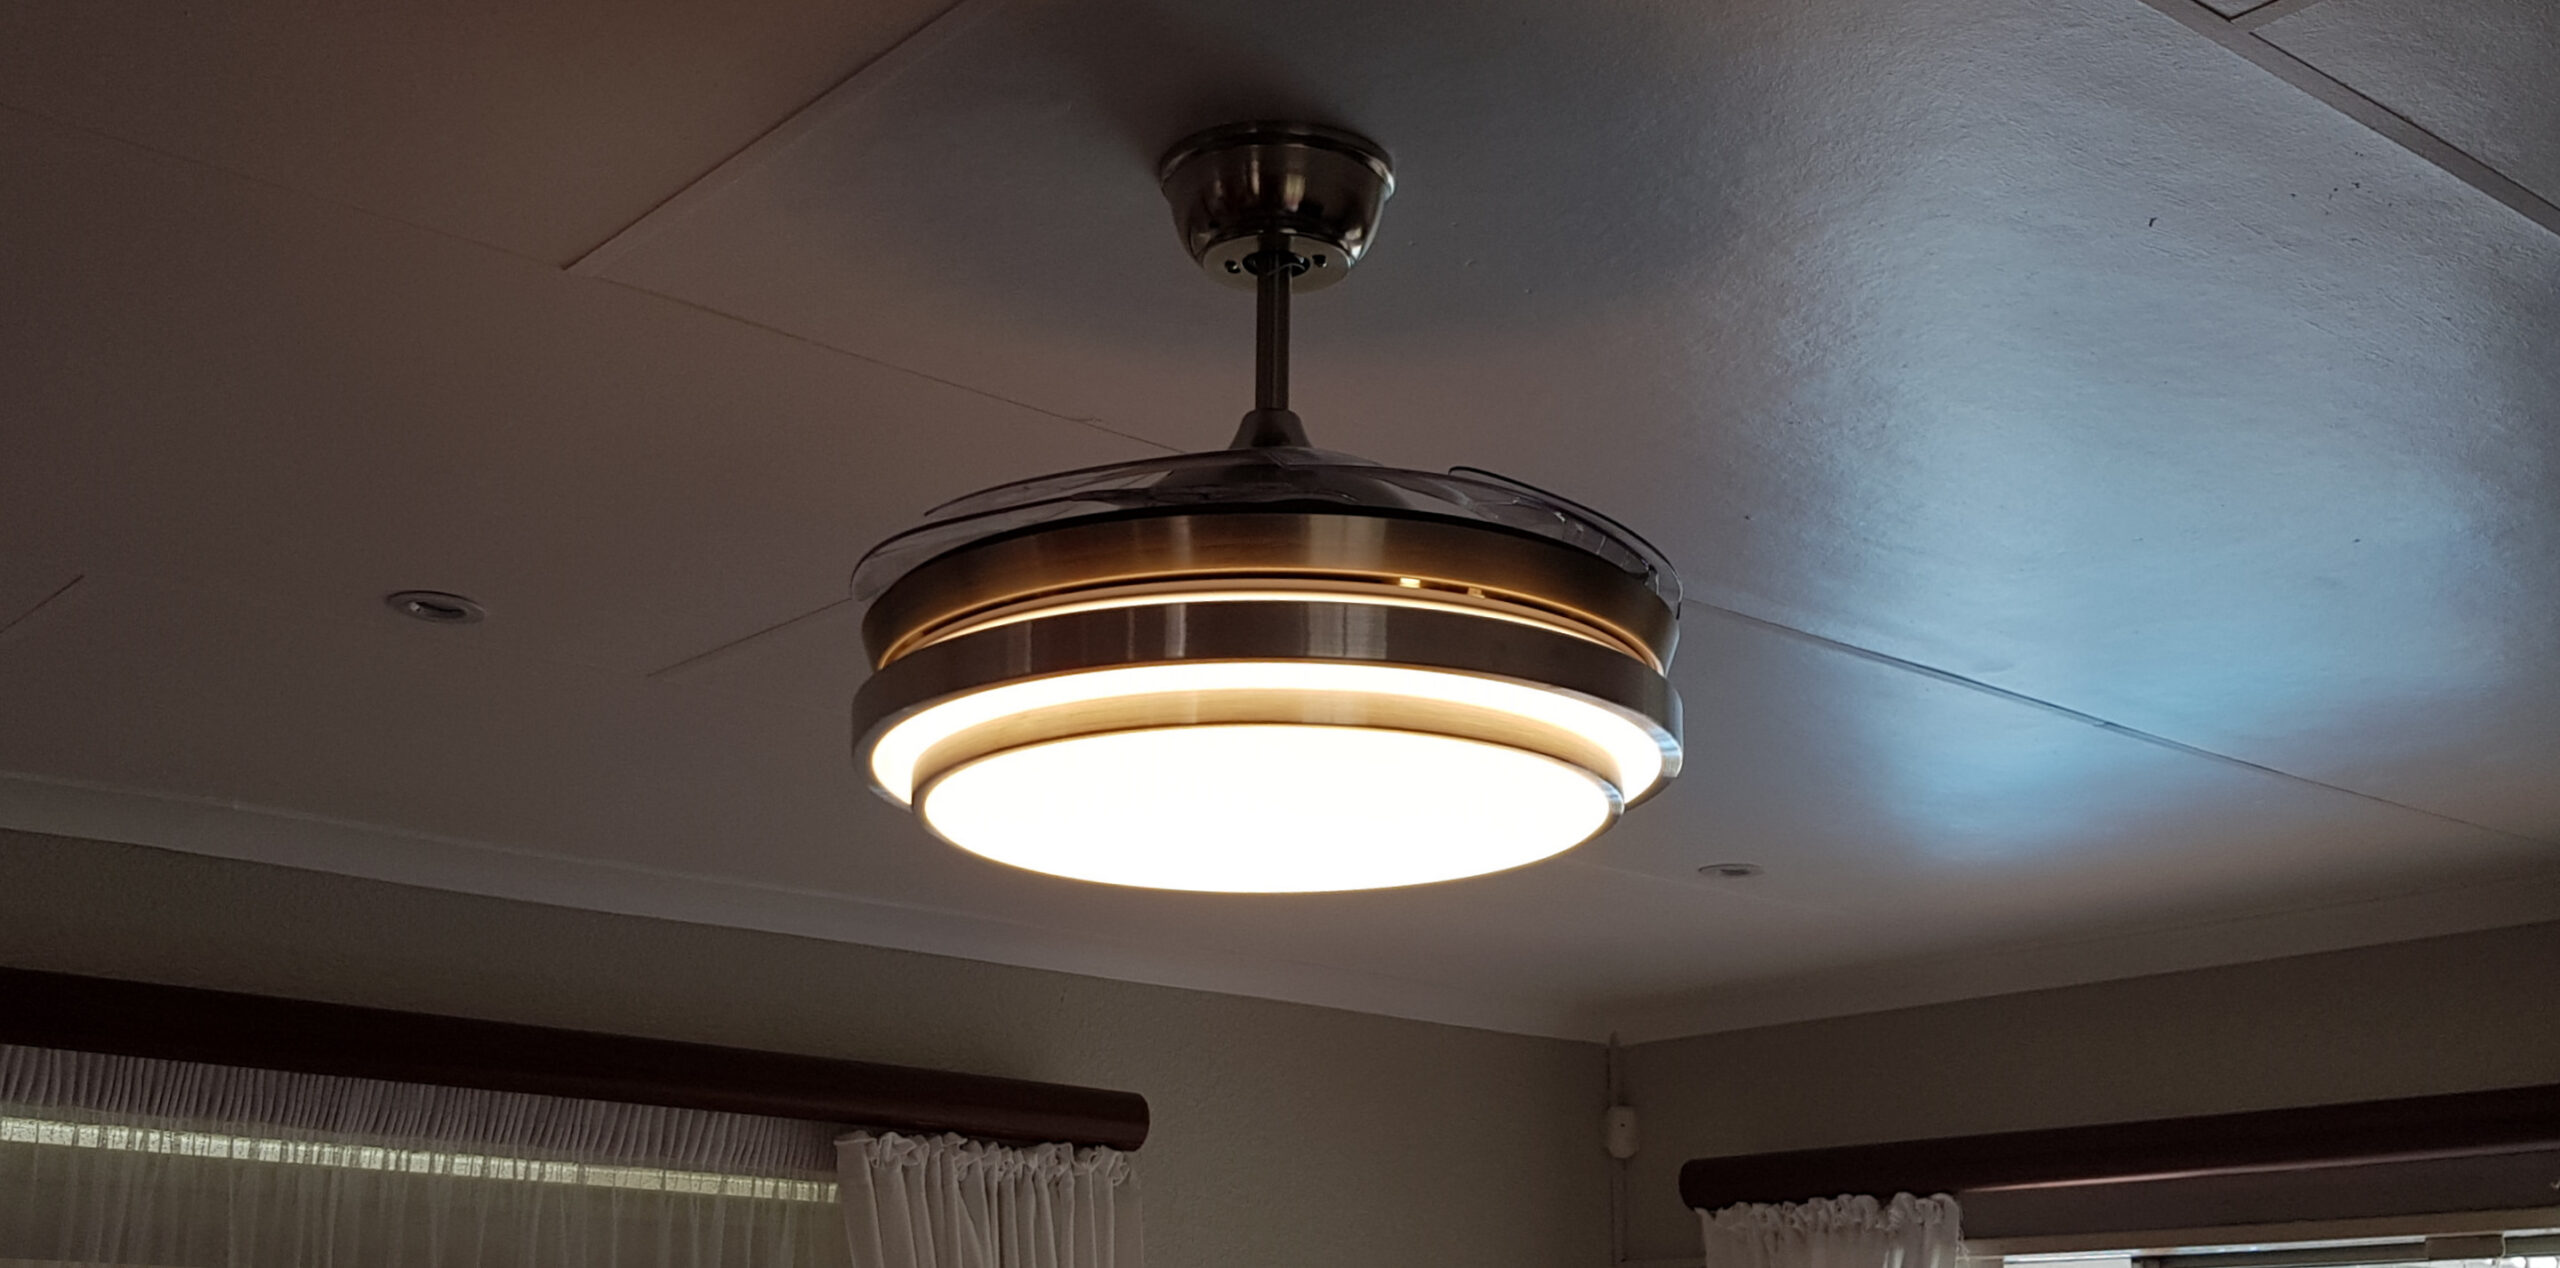 Ceiling Fan (3 light settings)